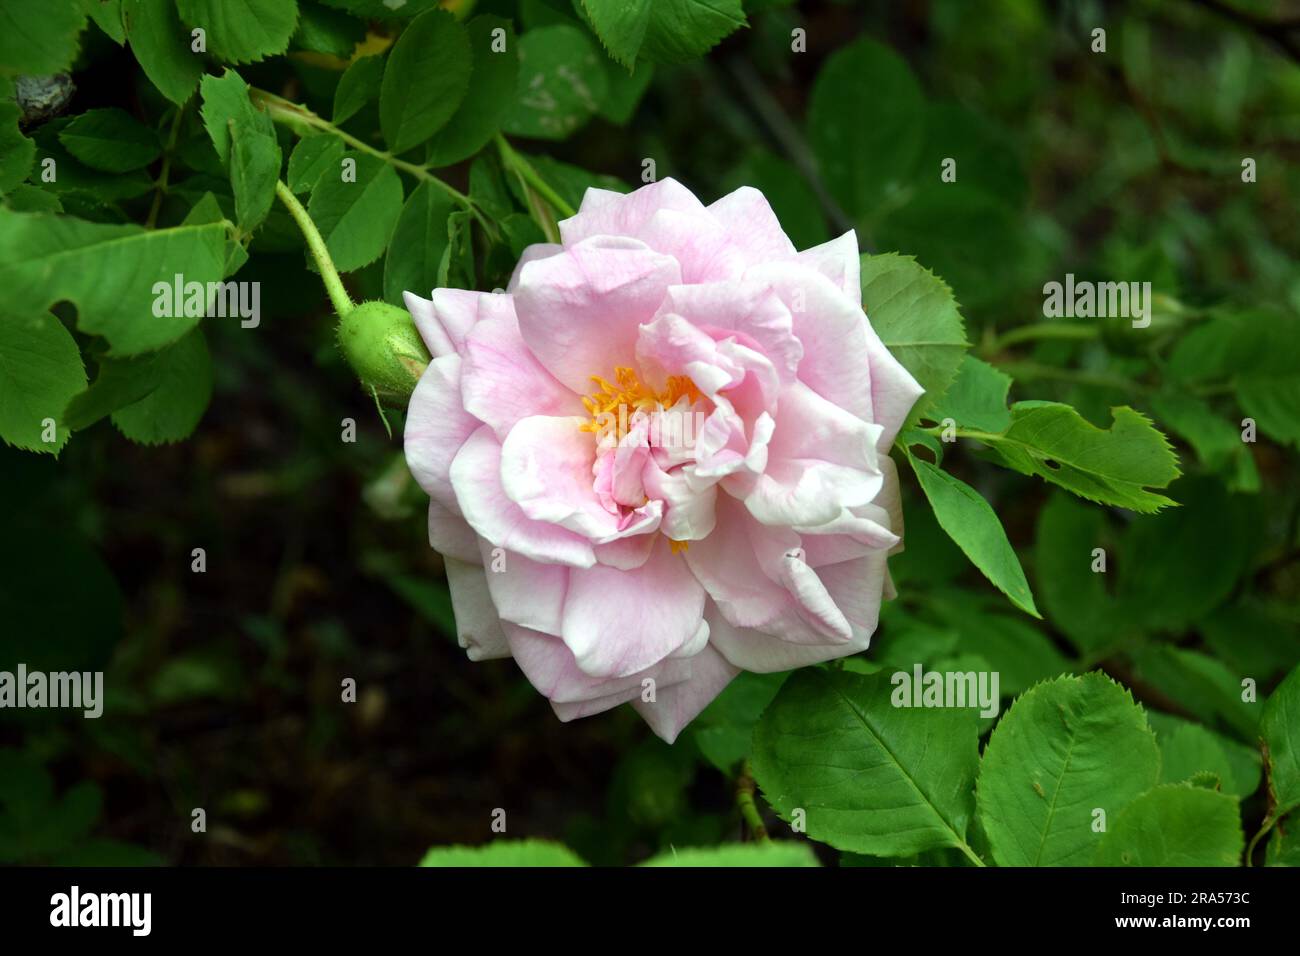 Rose Mustiala rose, Rosa alba Minette. Rose commune en Finlande et en Suède. Banque D'Images